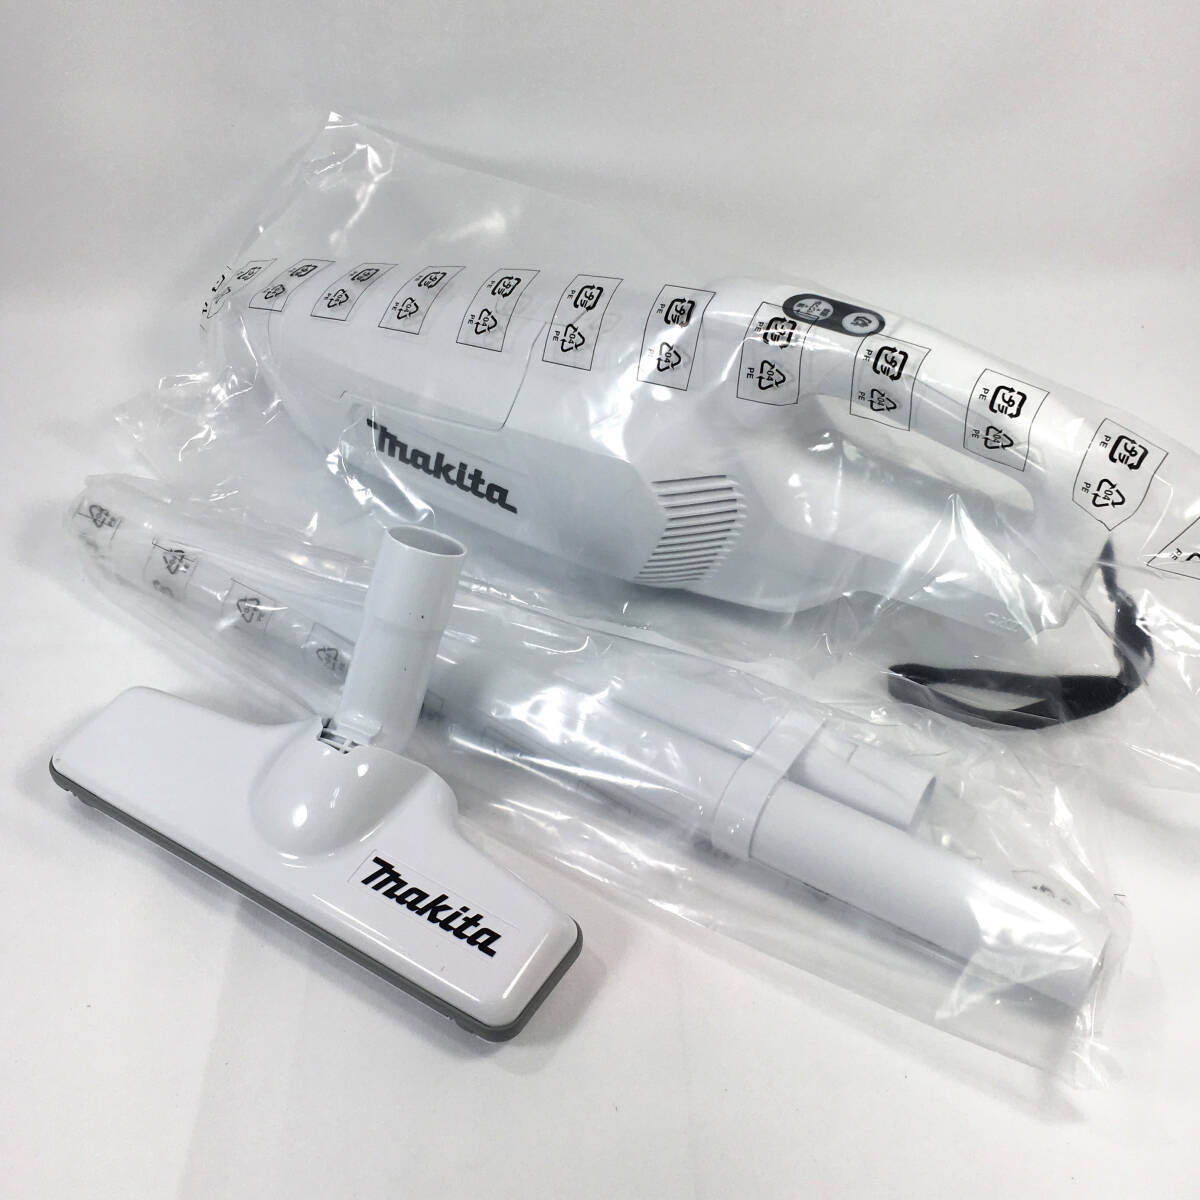 【 неиспользуемый 】 makita   перезаряжаемый  уборщик  CL107FDSHW  белый   аккумулятор  *   зарядное устройство  включено   бумага  упаковка ...  беспроводной    ручка  пылесос   makita